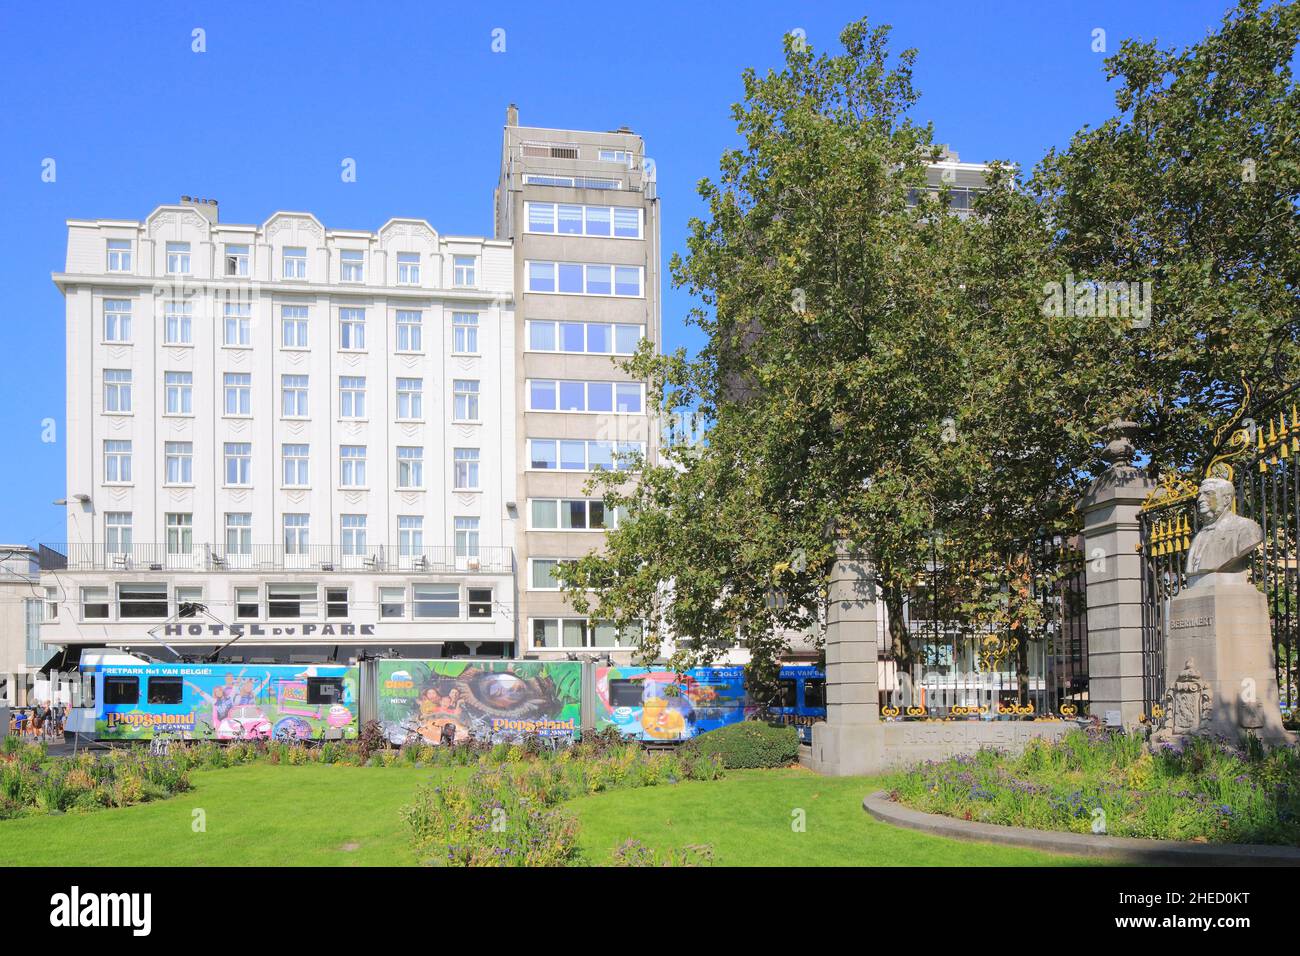 Belgio, Fiandre Occidentali, Ostenda, Place Marie Jose, tram che passa di fronte all'Hotel du Parc in stile Art Deco con la statua di Auguste Beernaert sulla destra Foto Stock